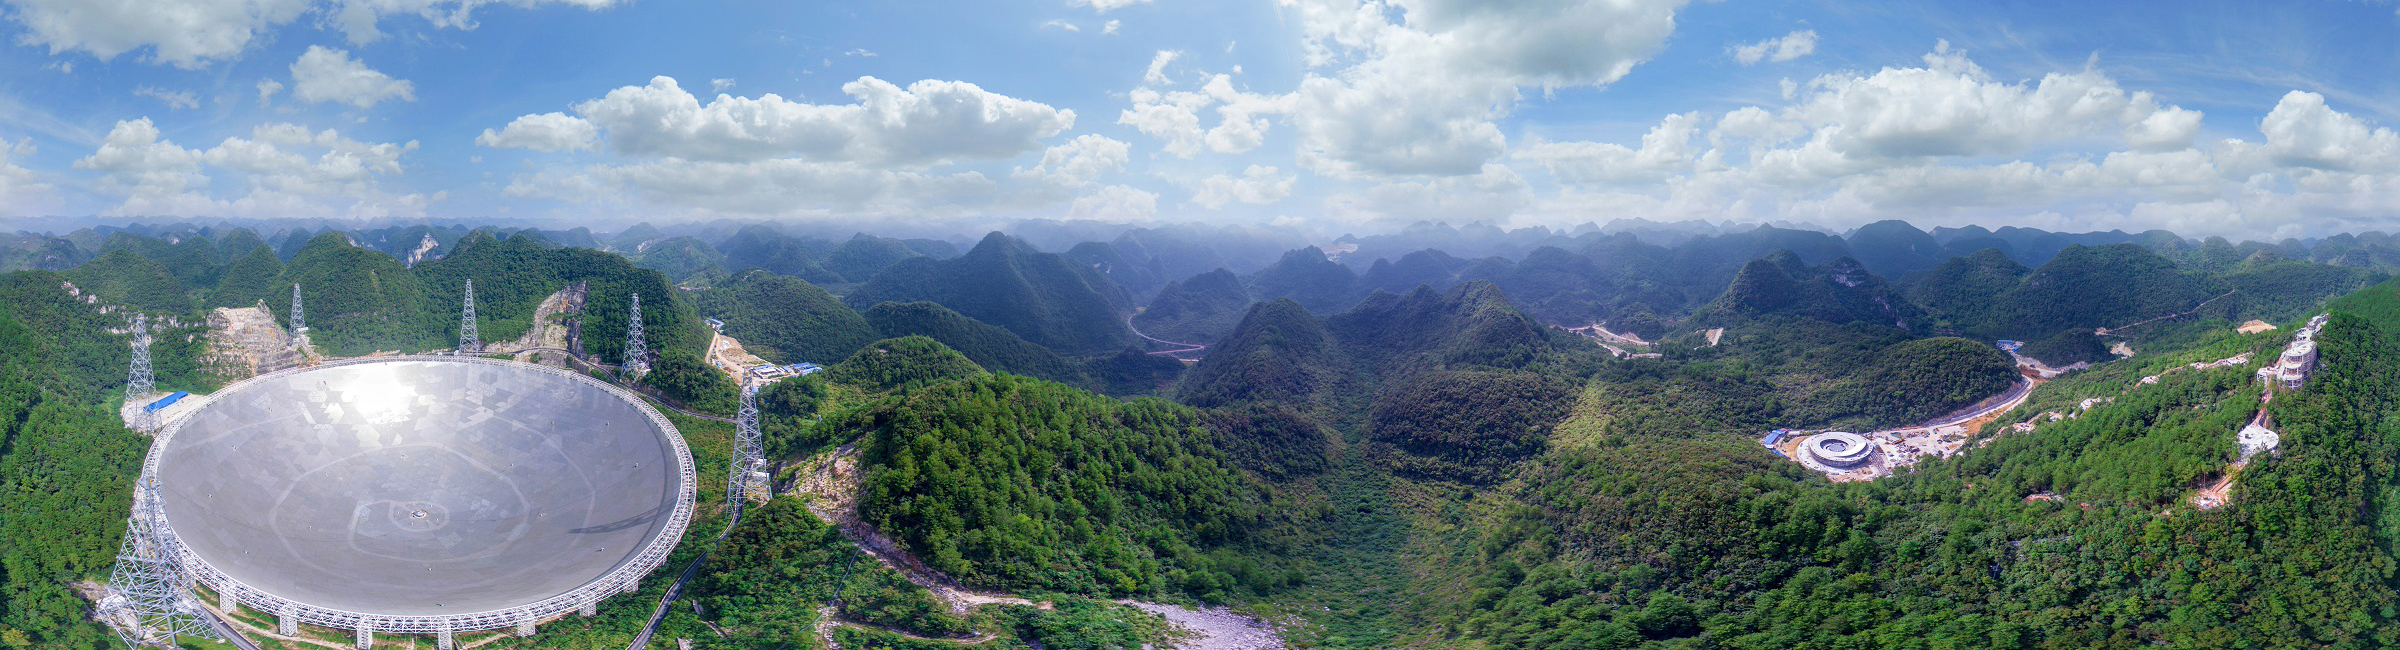 平塘向世界发出星空之约 贵州省黔南平塘VR航拍全景图